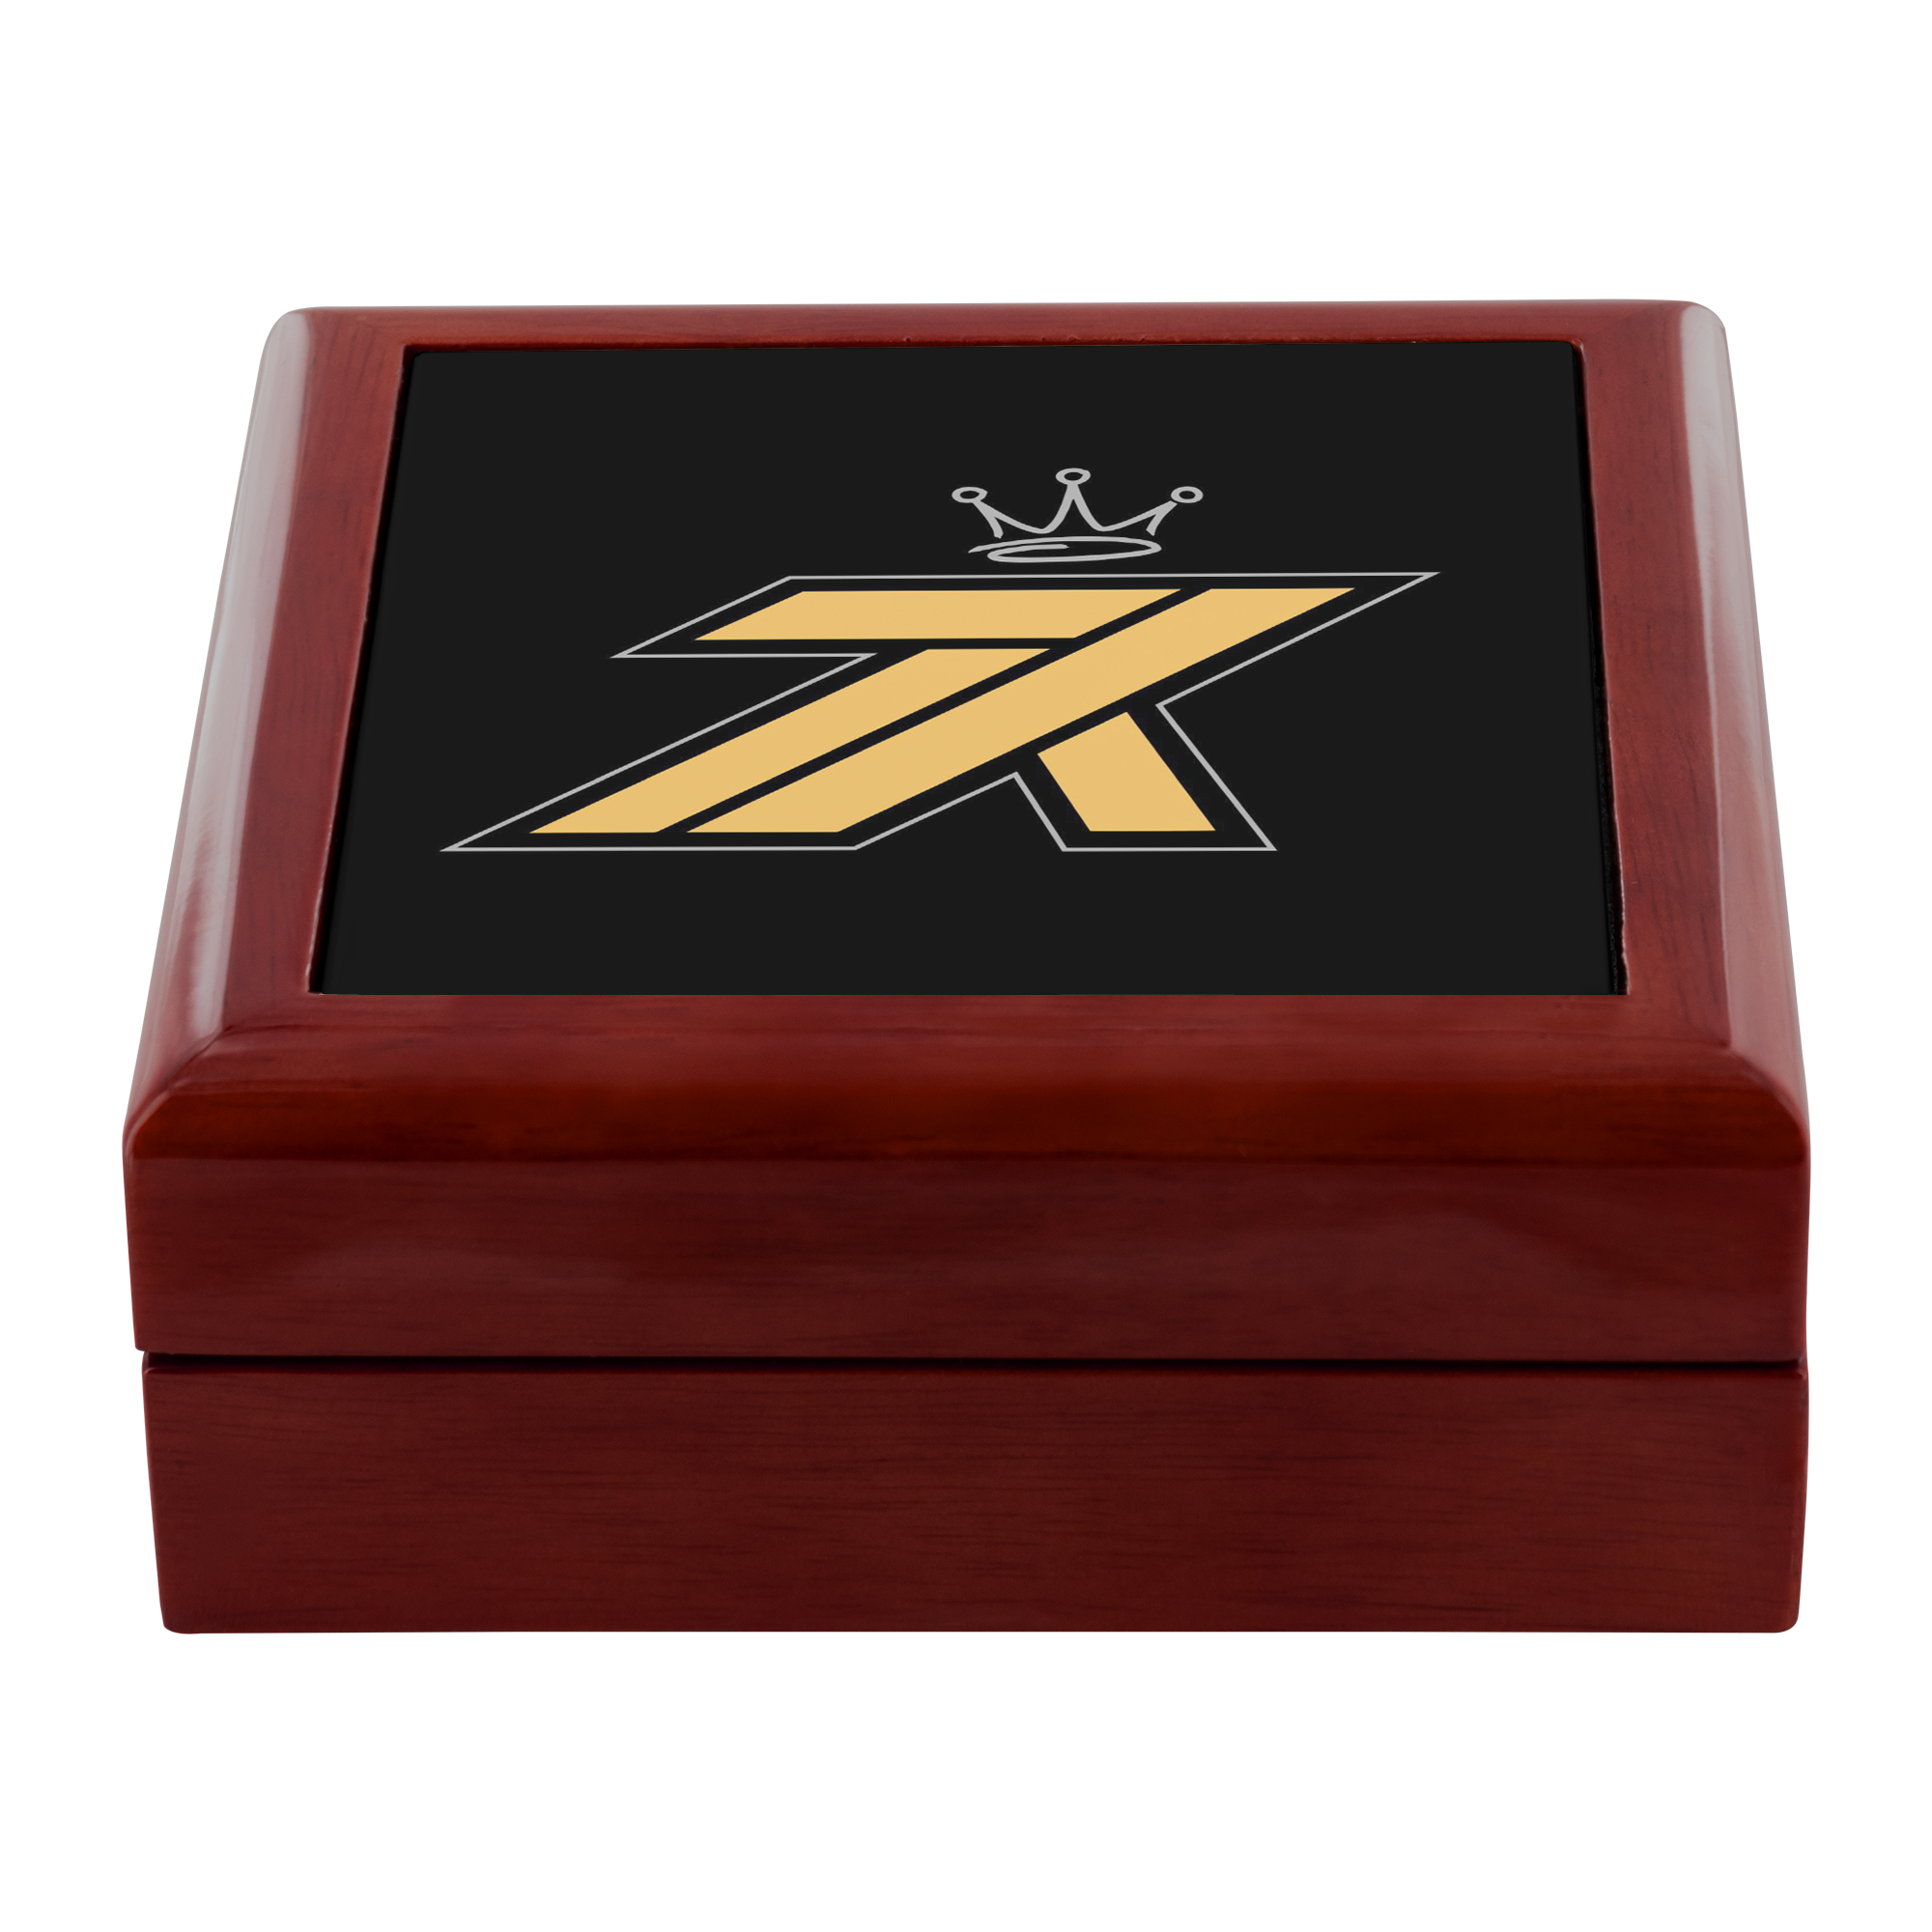 K7 Genuine Wood Jewelry Box